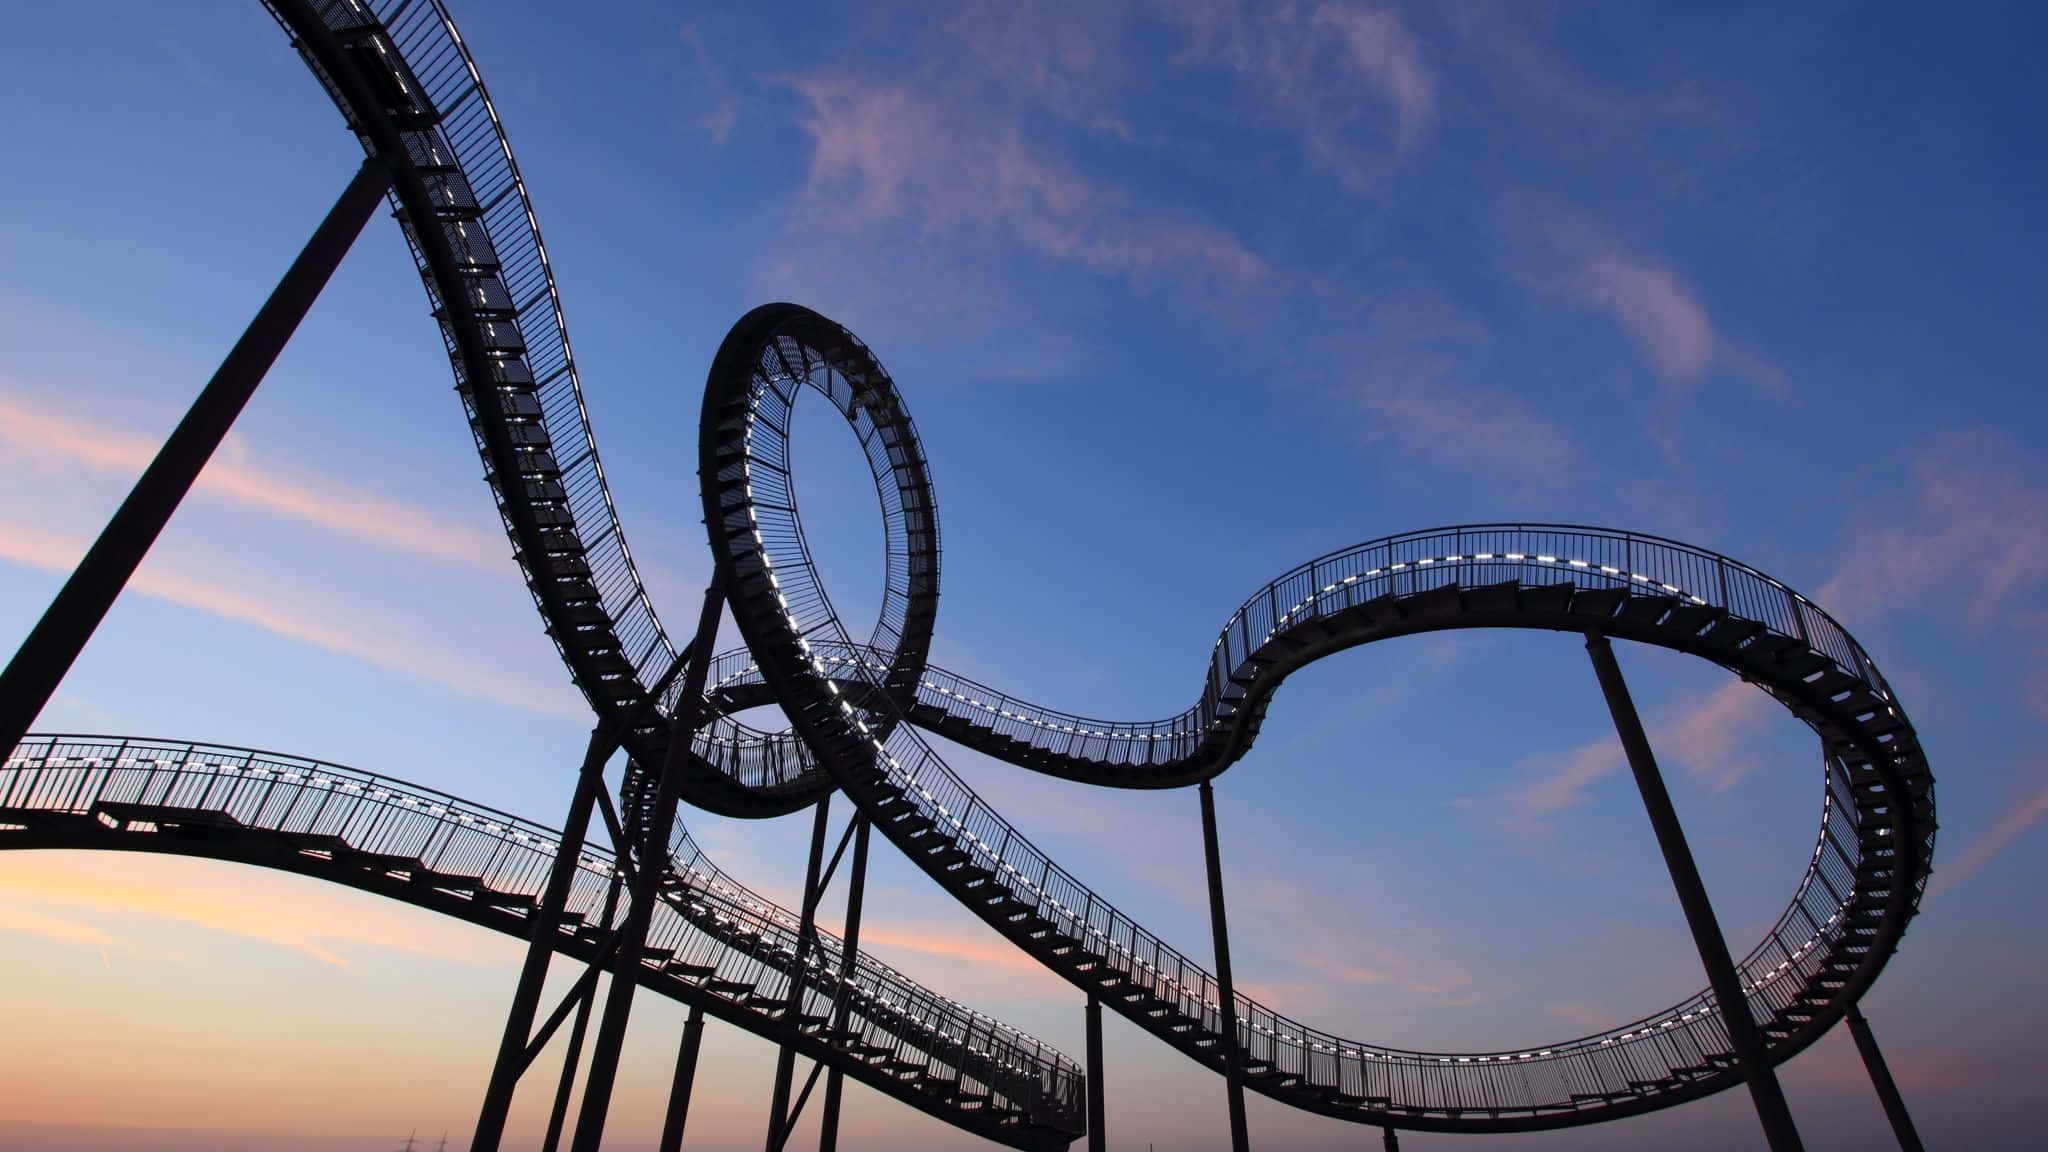 Thrilling Loop-the-loop Roller Coaster in Amusement Park